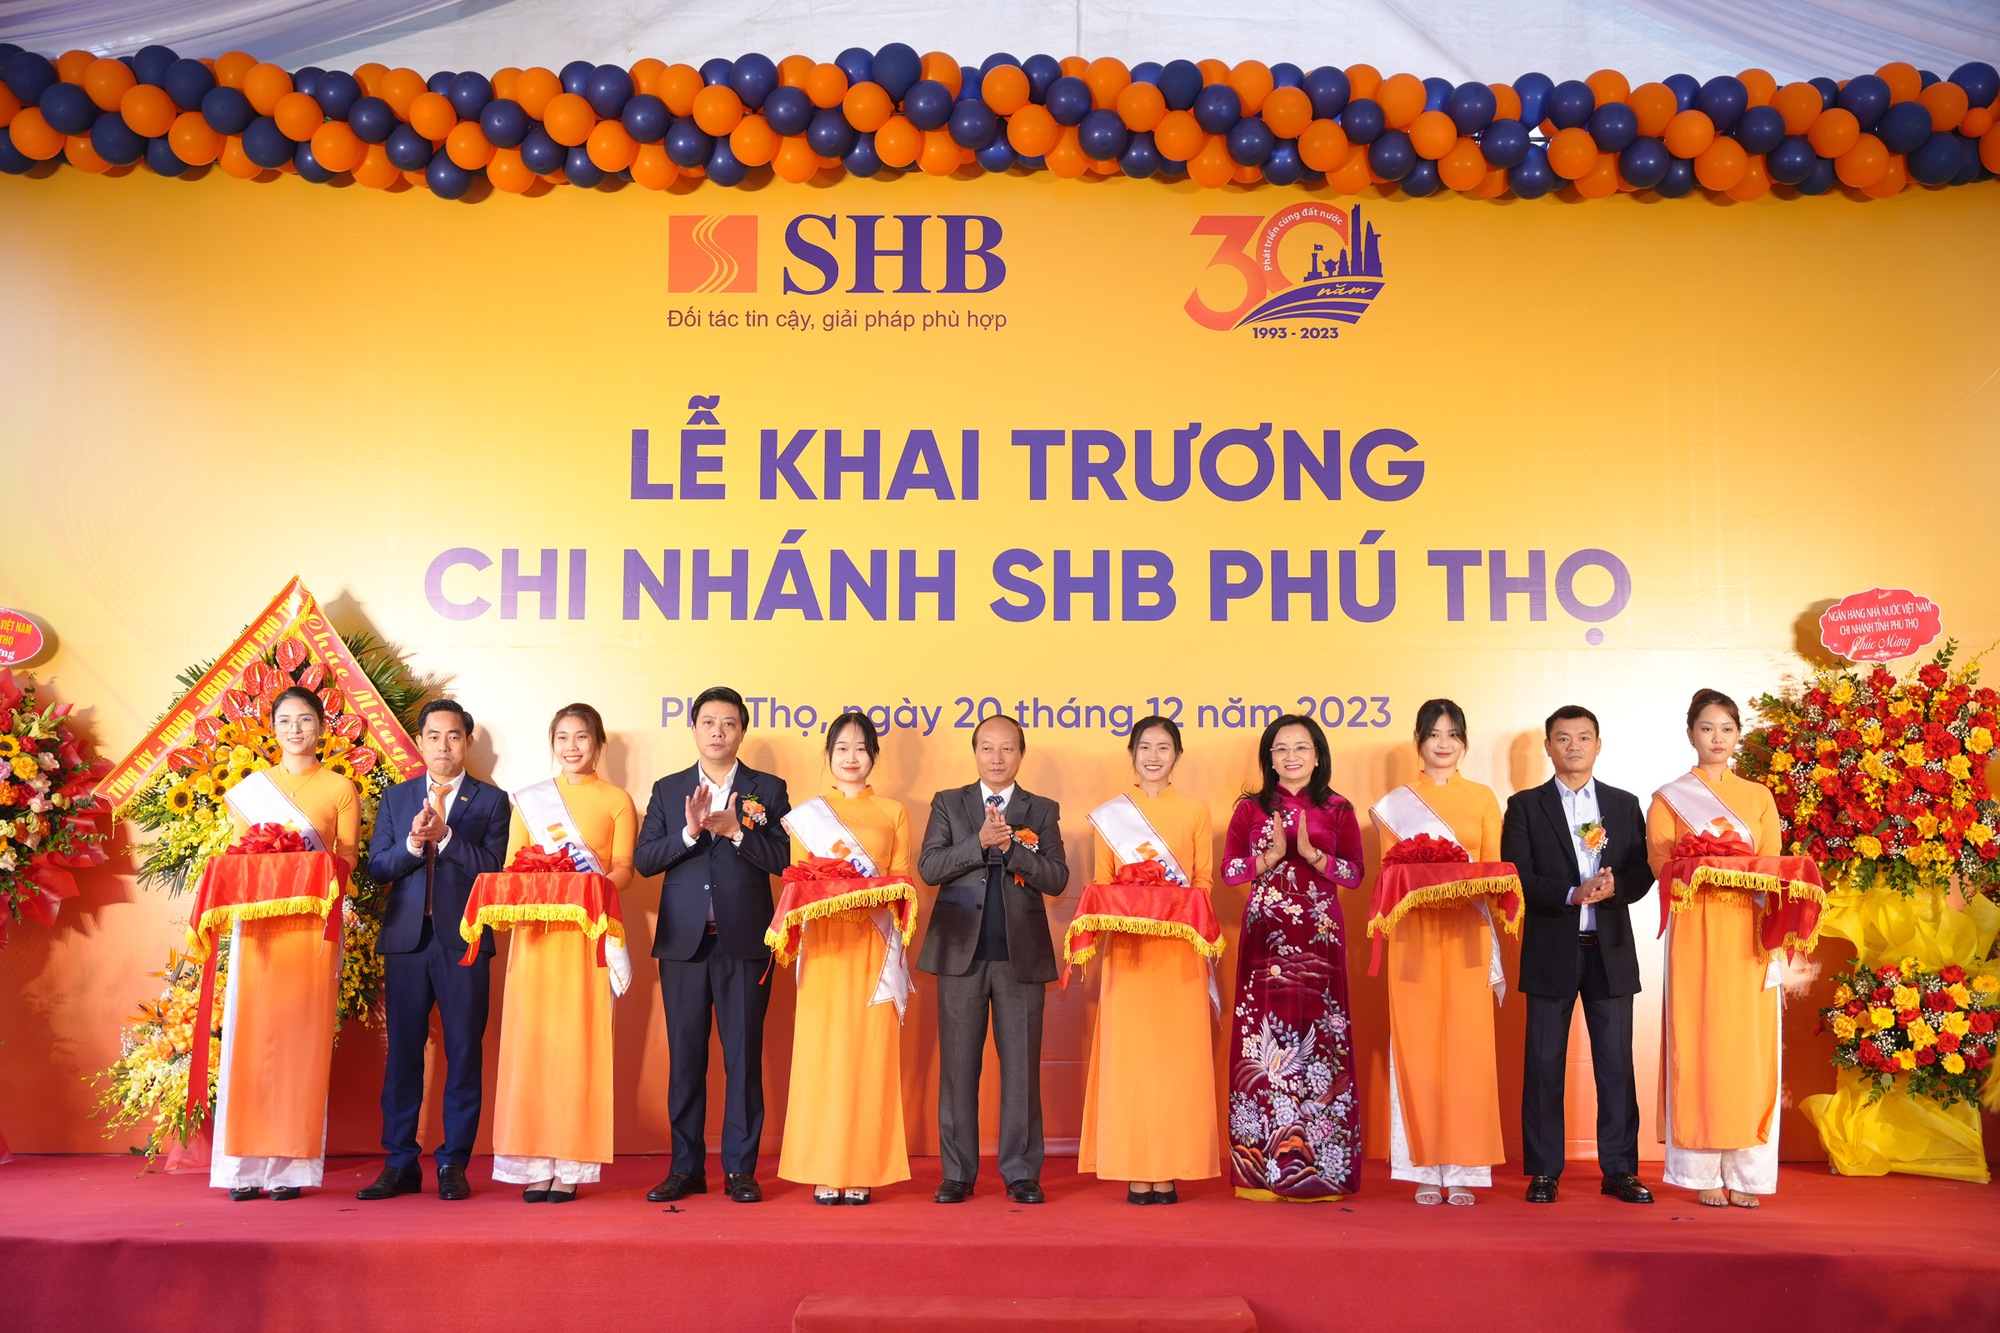 Ngày 20/12, SHB Phú Thọ gia nhập thị trường tài chính địa bàn tỉnh Phú Thọ, hứa hẹn sẽ phục vụ tốt hơn thị trường dịch vụ ngân hàng bán lẻ đầy tiềm năng khu vực Đông Bắc Bộ.